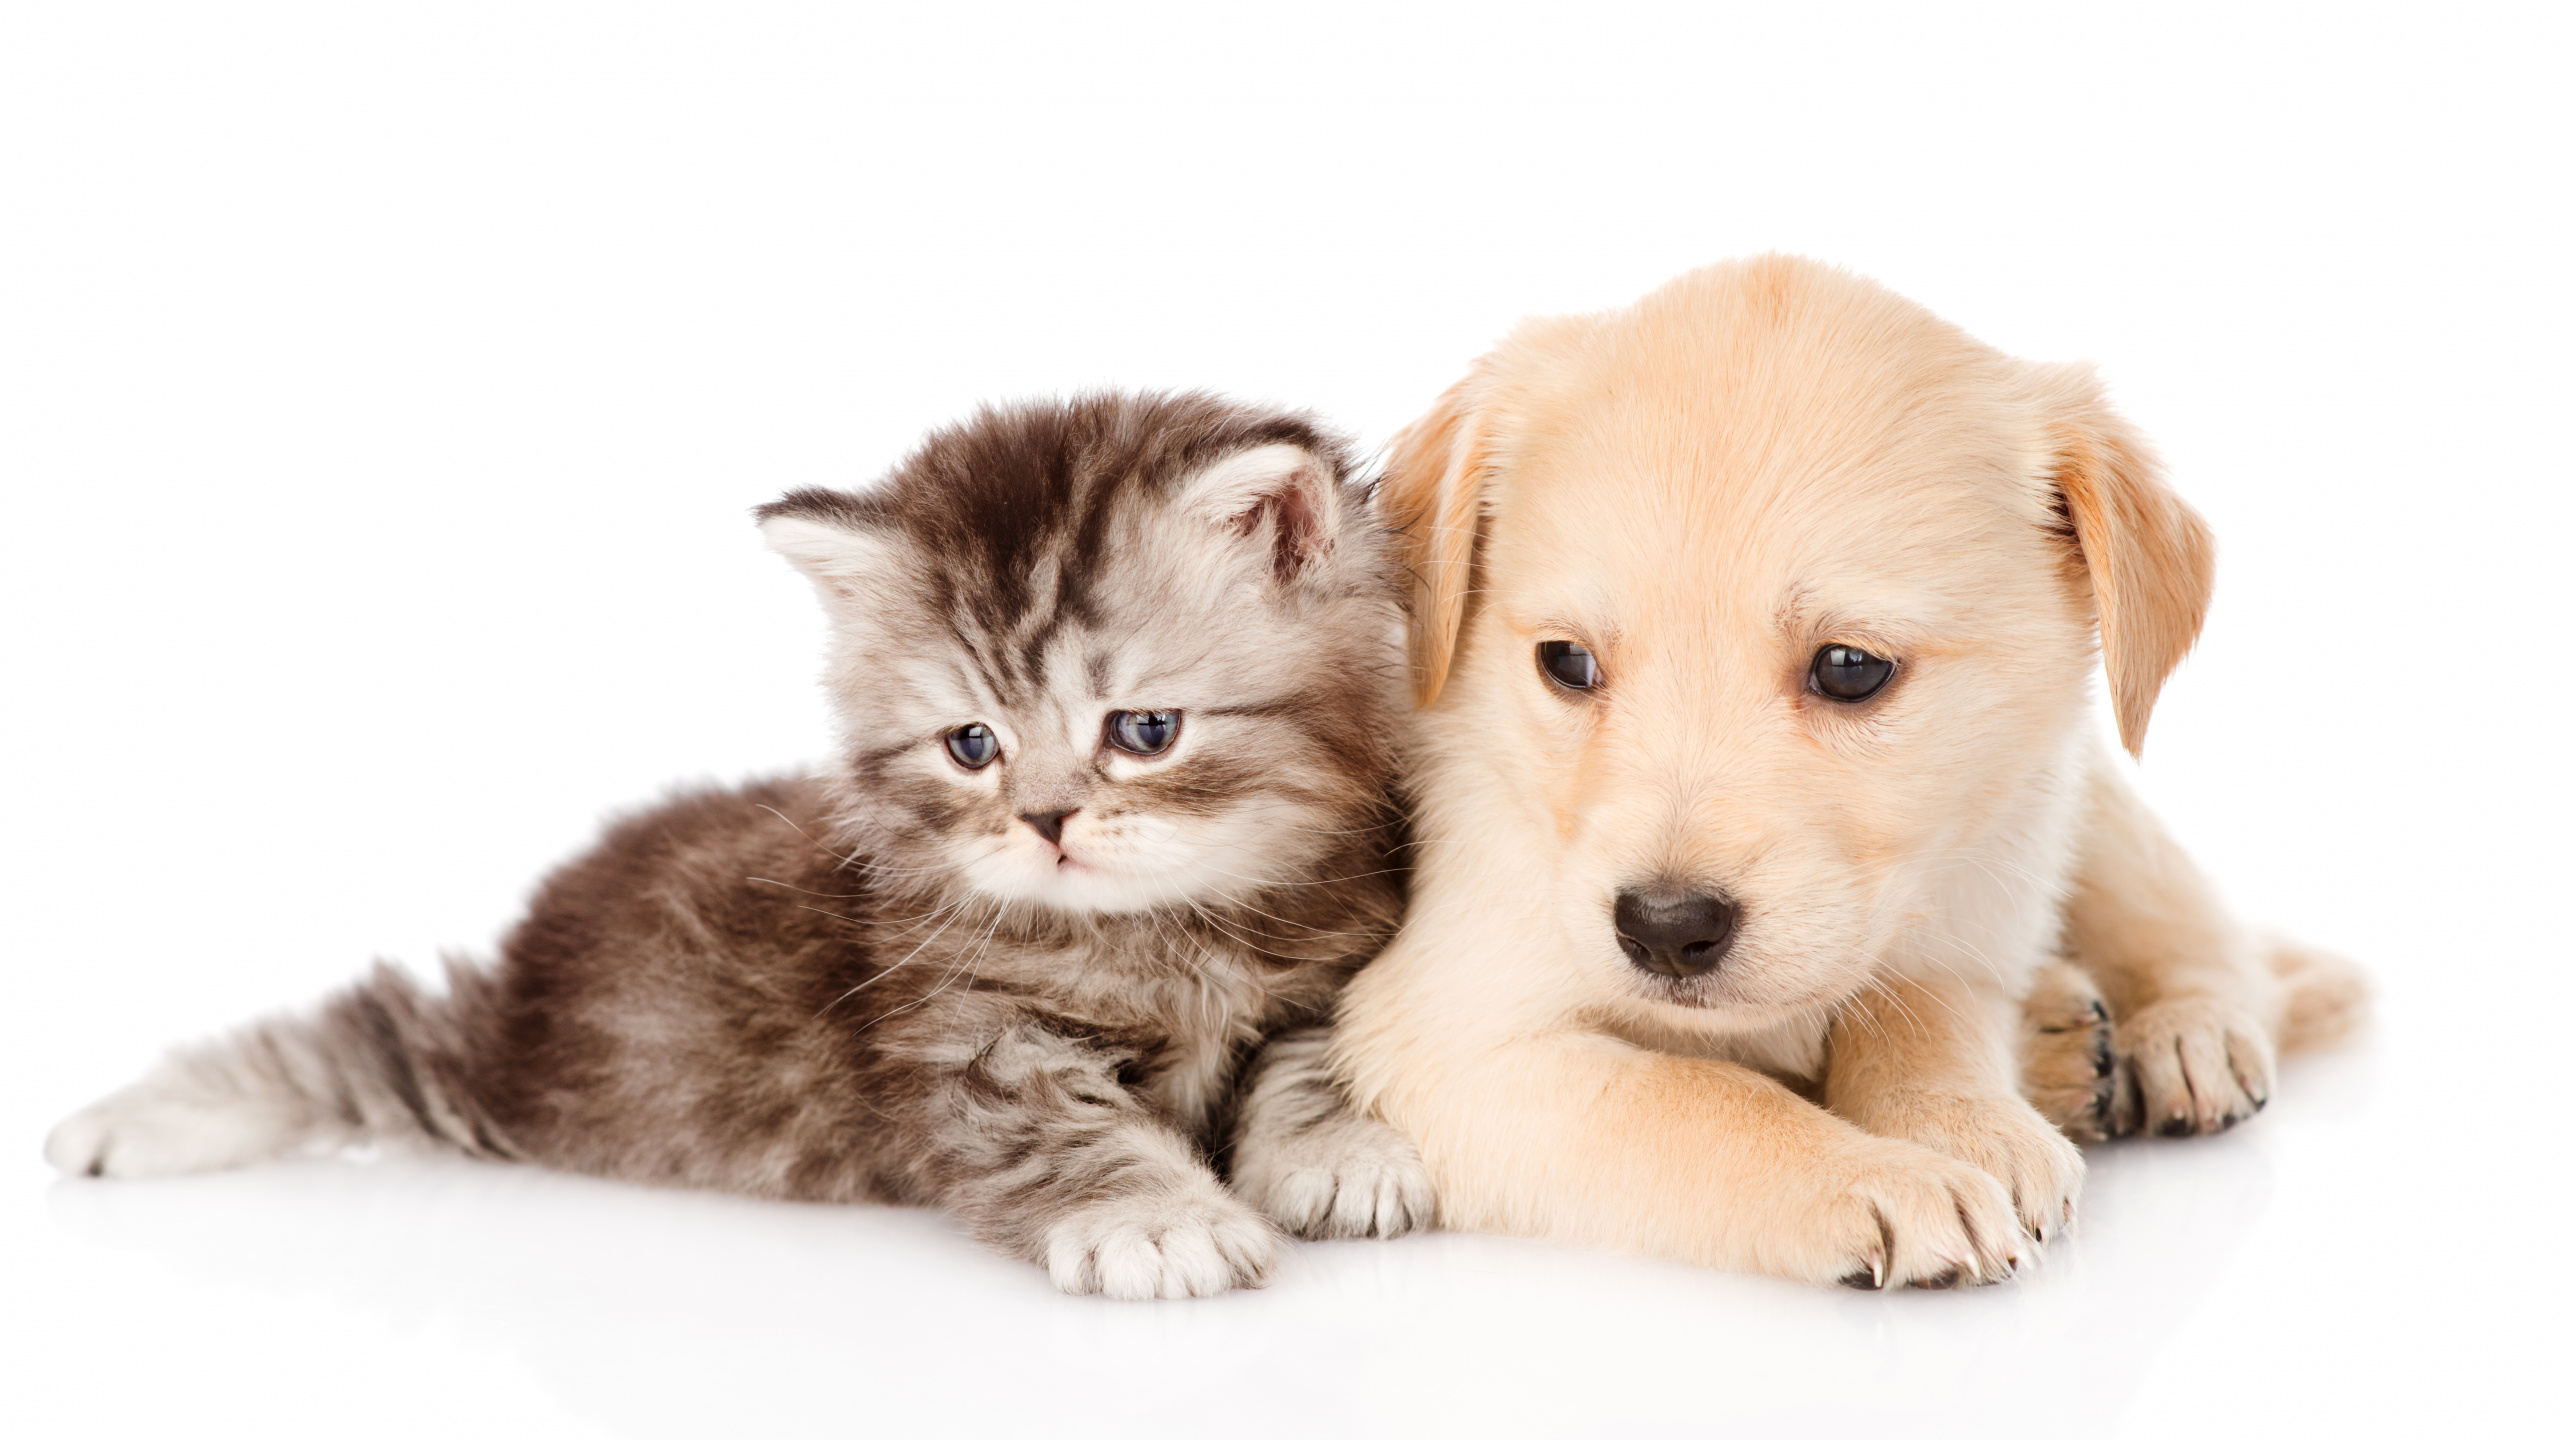 小狗, 小猫, 黄金猎犬, 品种的狗, 狗喜欢哺乳动物 壁纸 2560x1440 允许